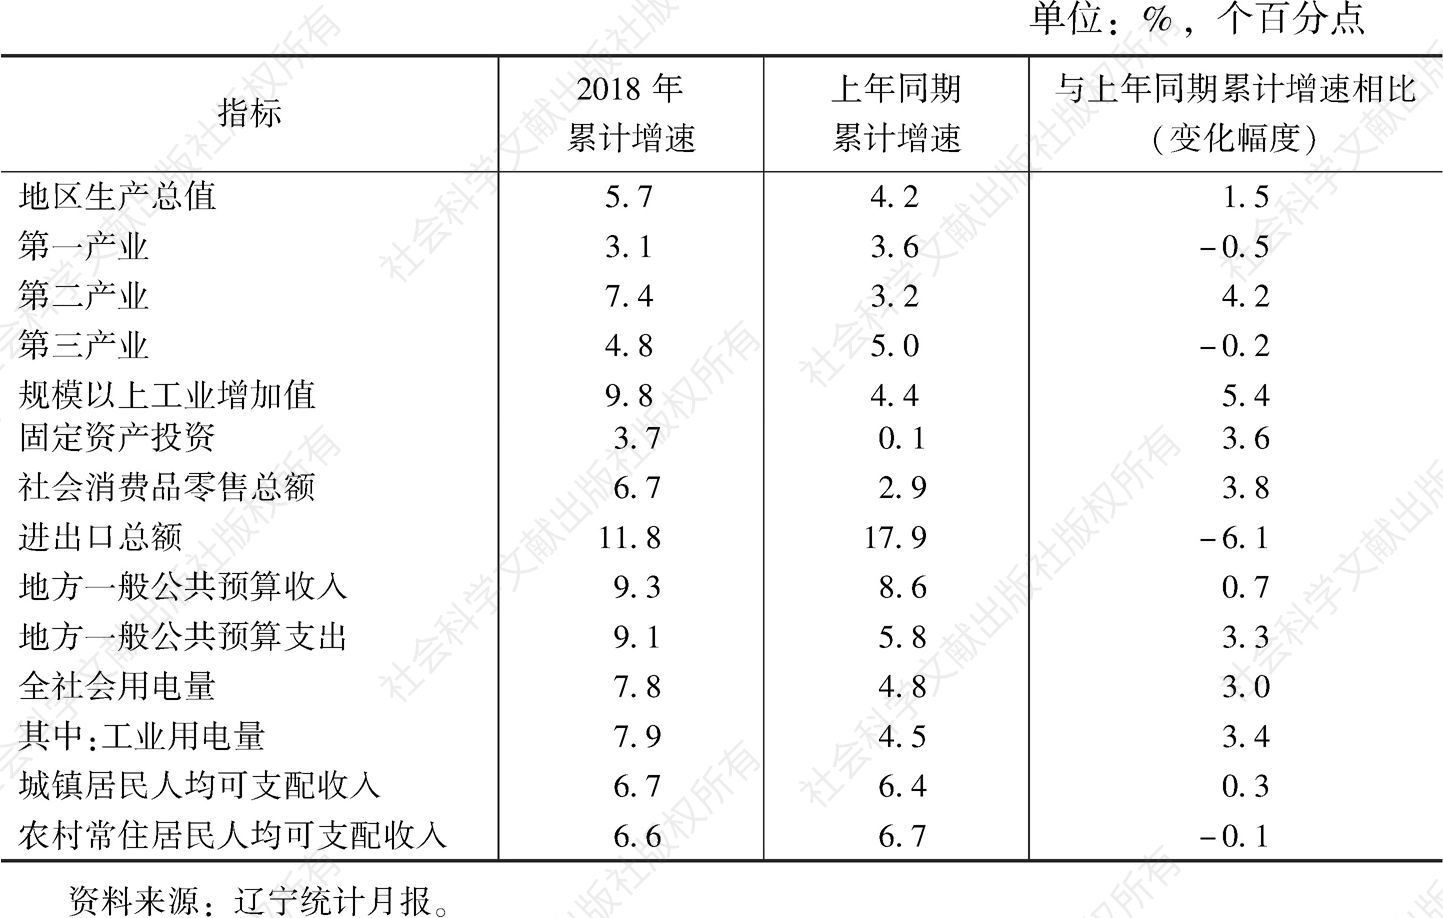 表1 2018年辽宁主要经济指标与上年同期对比情况